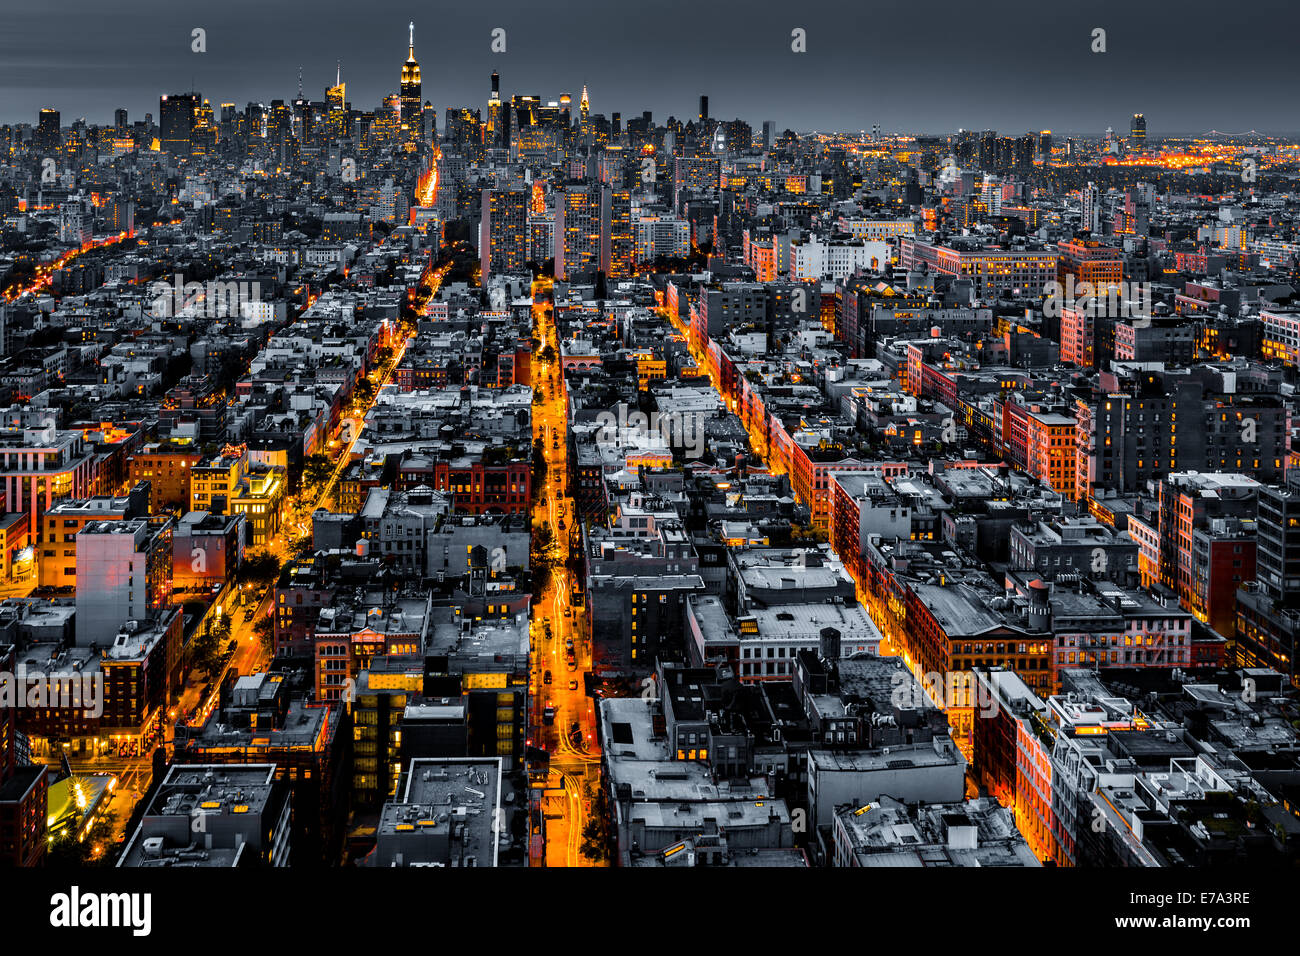 Luftaufnahme von New York City in der Nacht mit beleuchteten Wege in Richtung Midtown konvergieren. Stockfoto